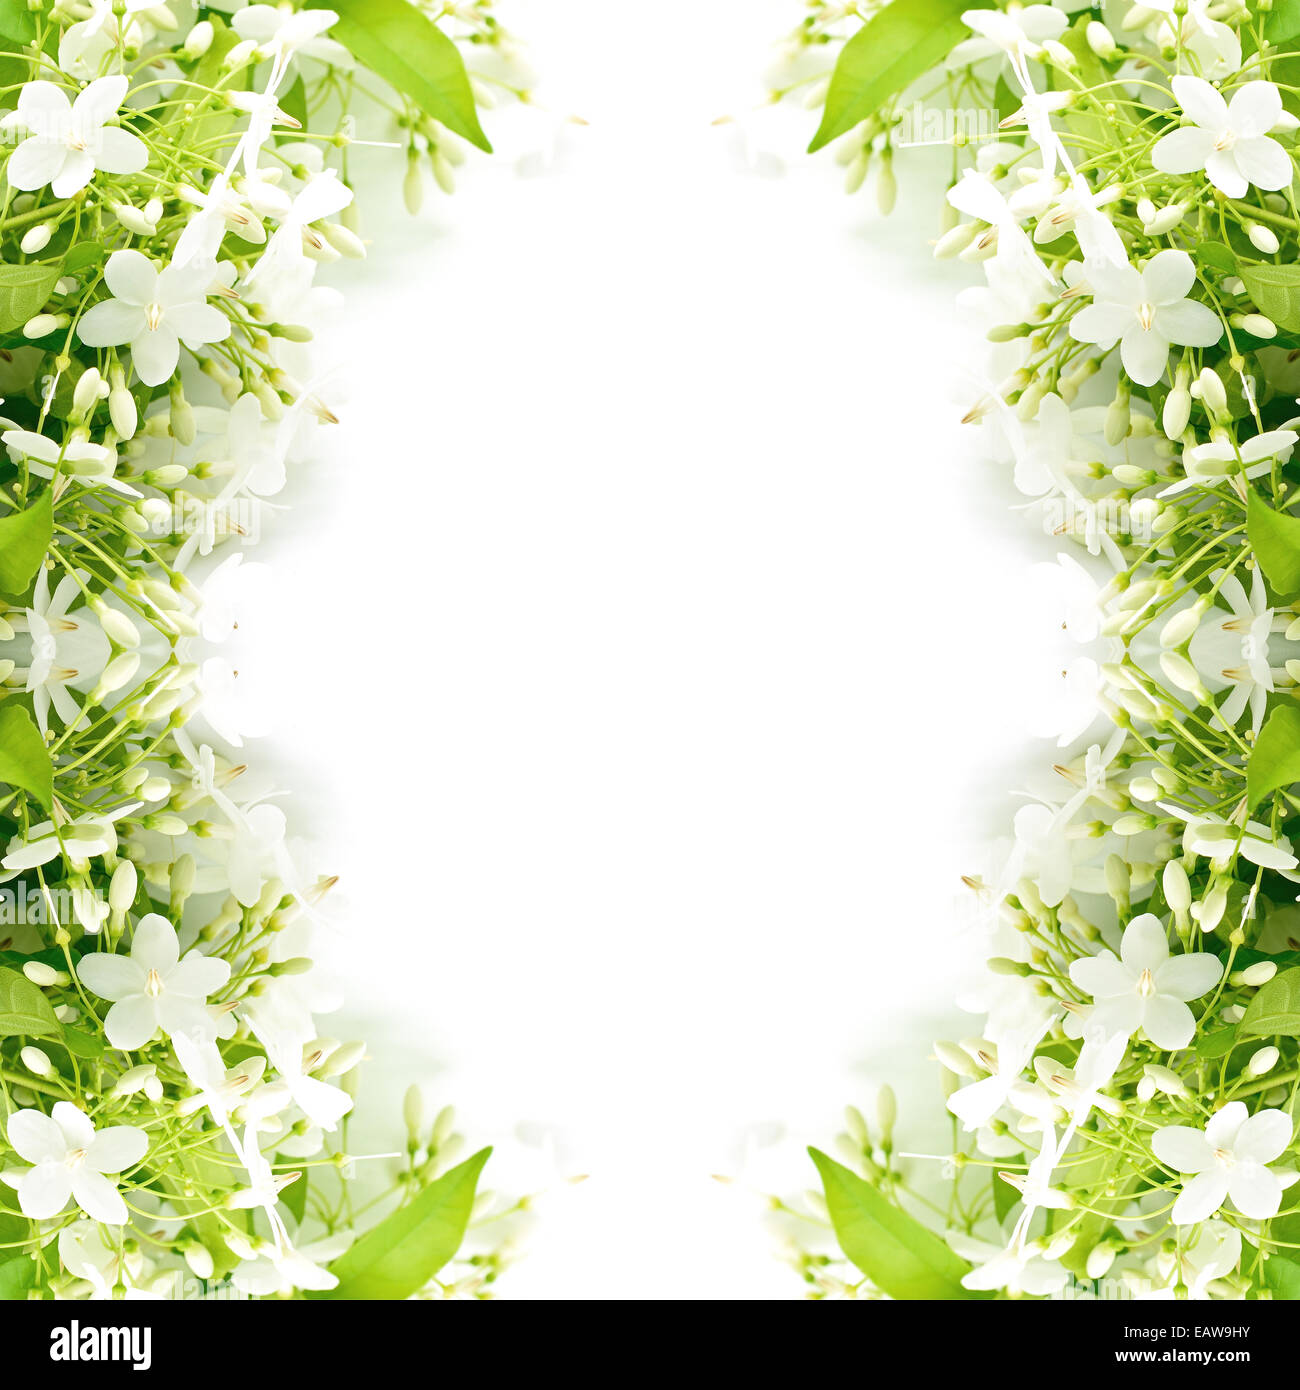 Tropical white and fragrant flower, Wild Water Plum (Wrightia religiosa), isolated on white Stock Photo